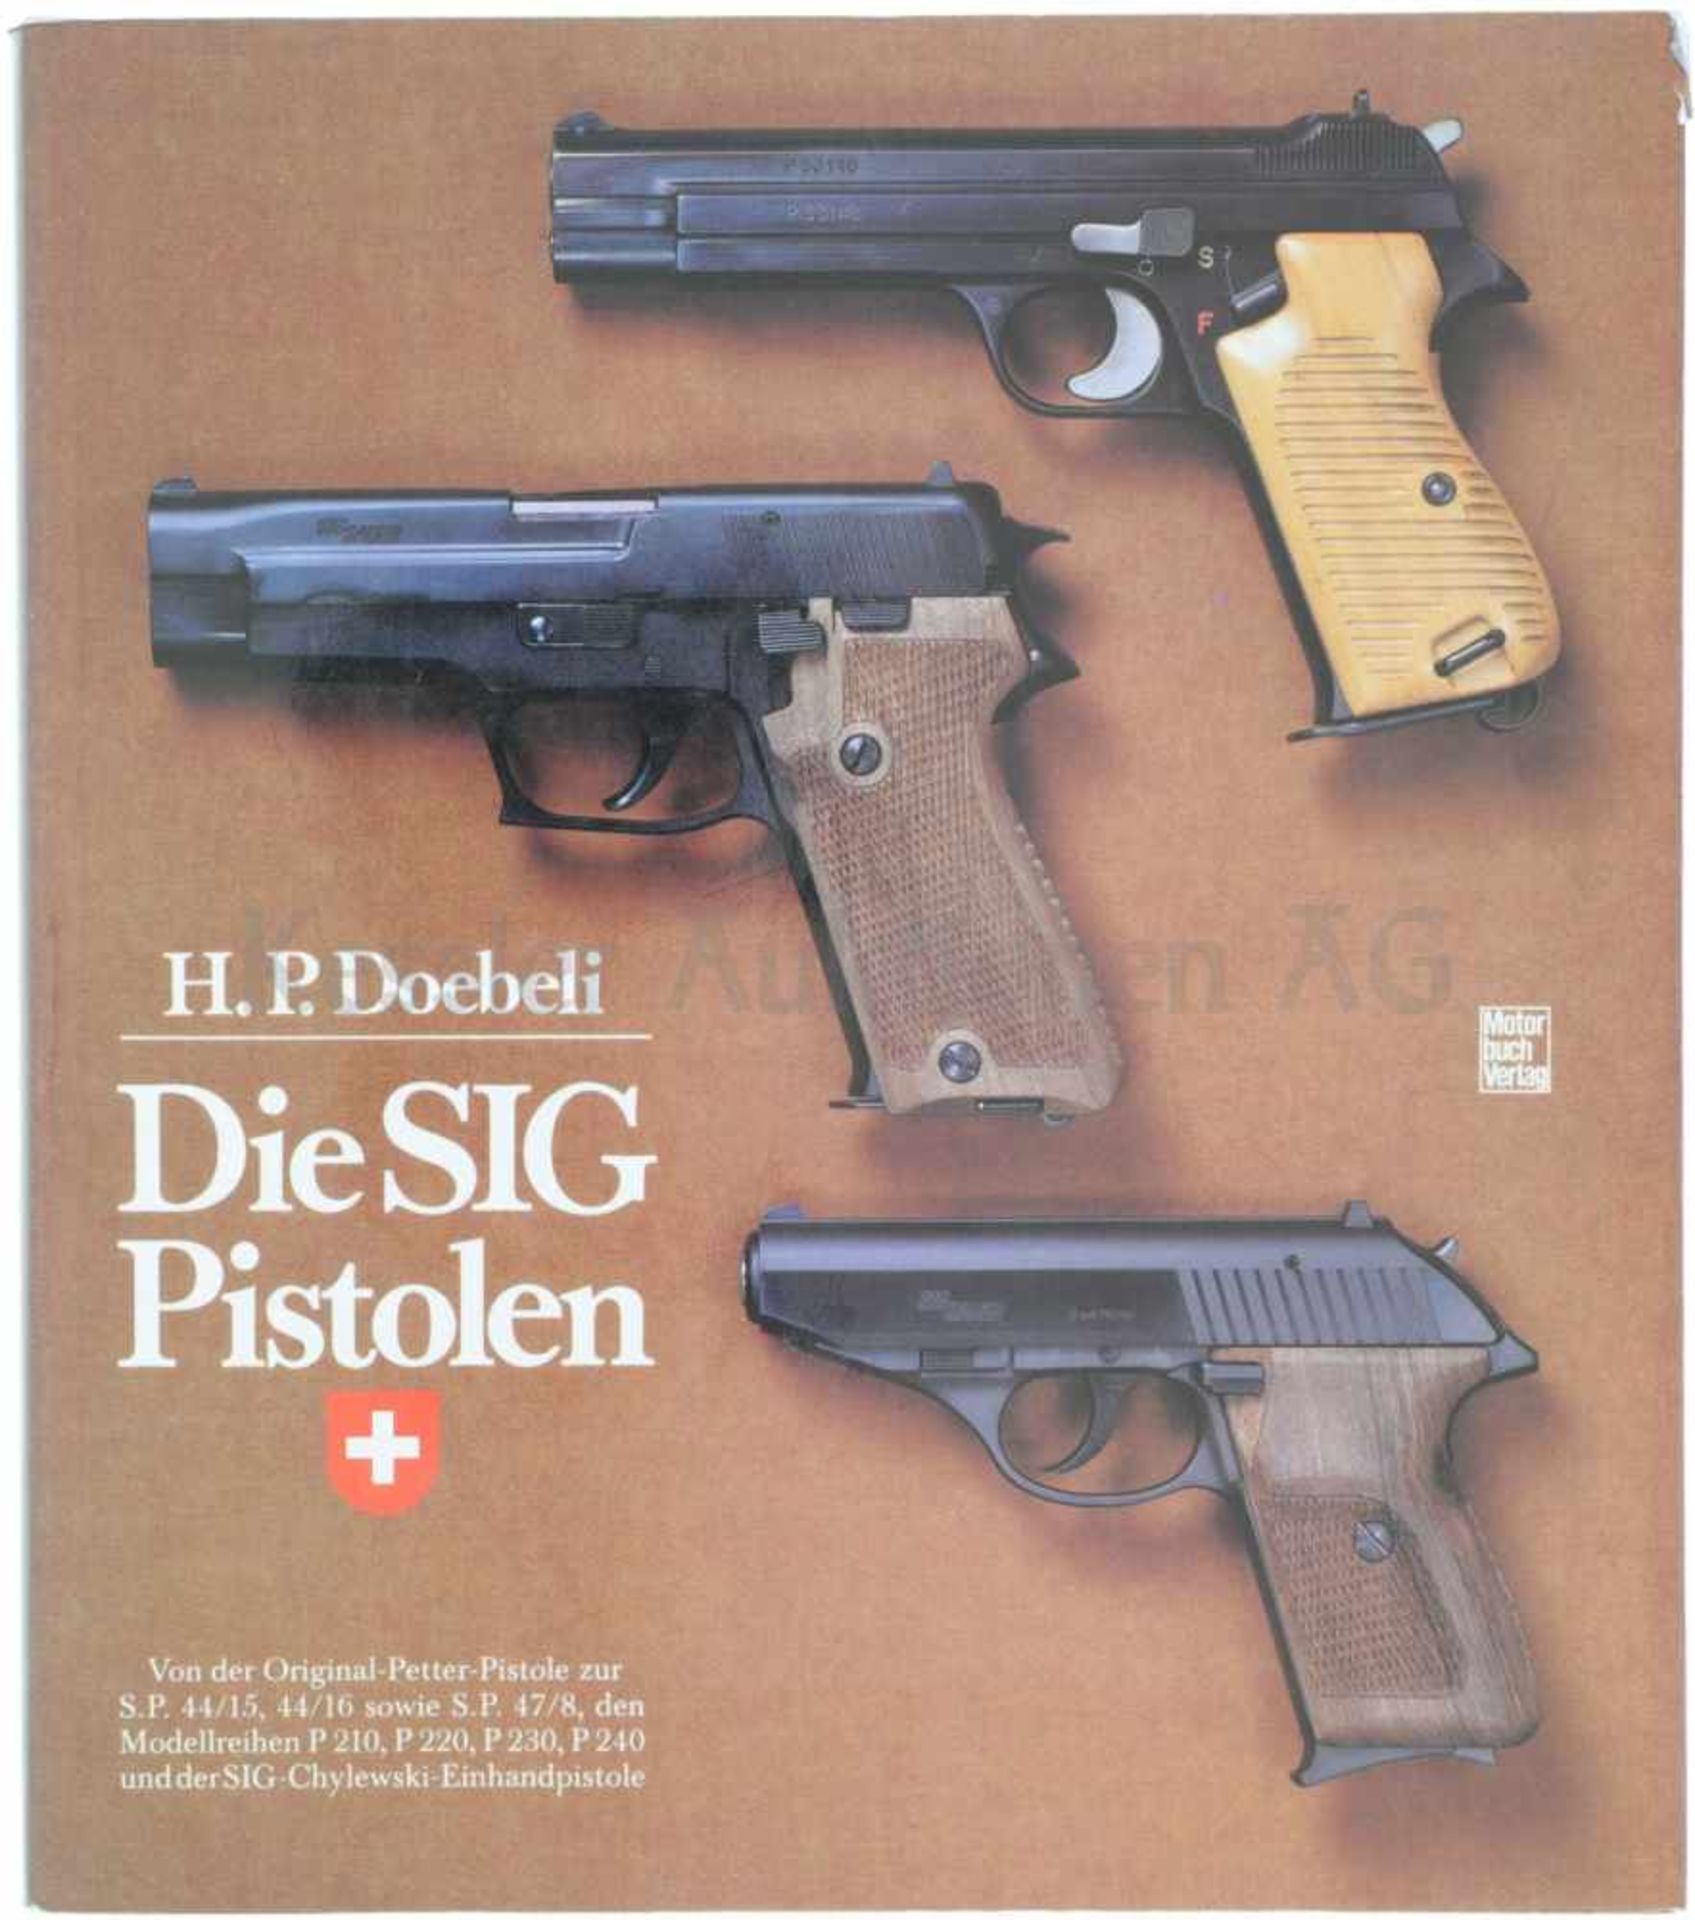 Die SIG Pistolen Der Autor H.P. Doebeli beschreibt auf 190 Seiten interessant den Werdegang der